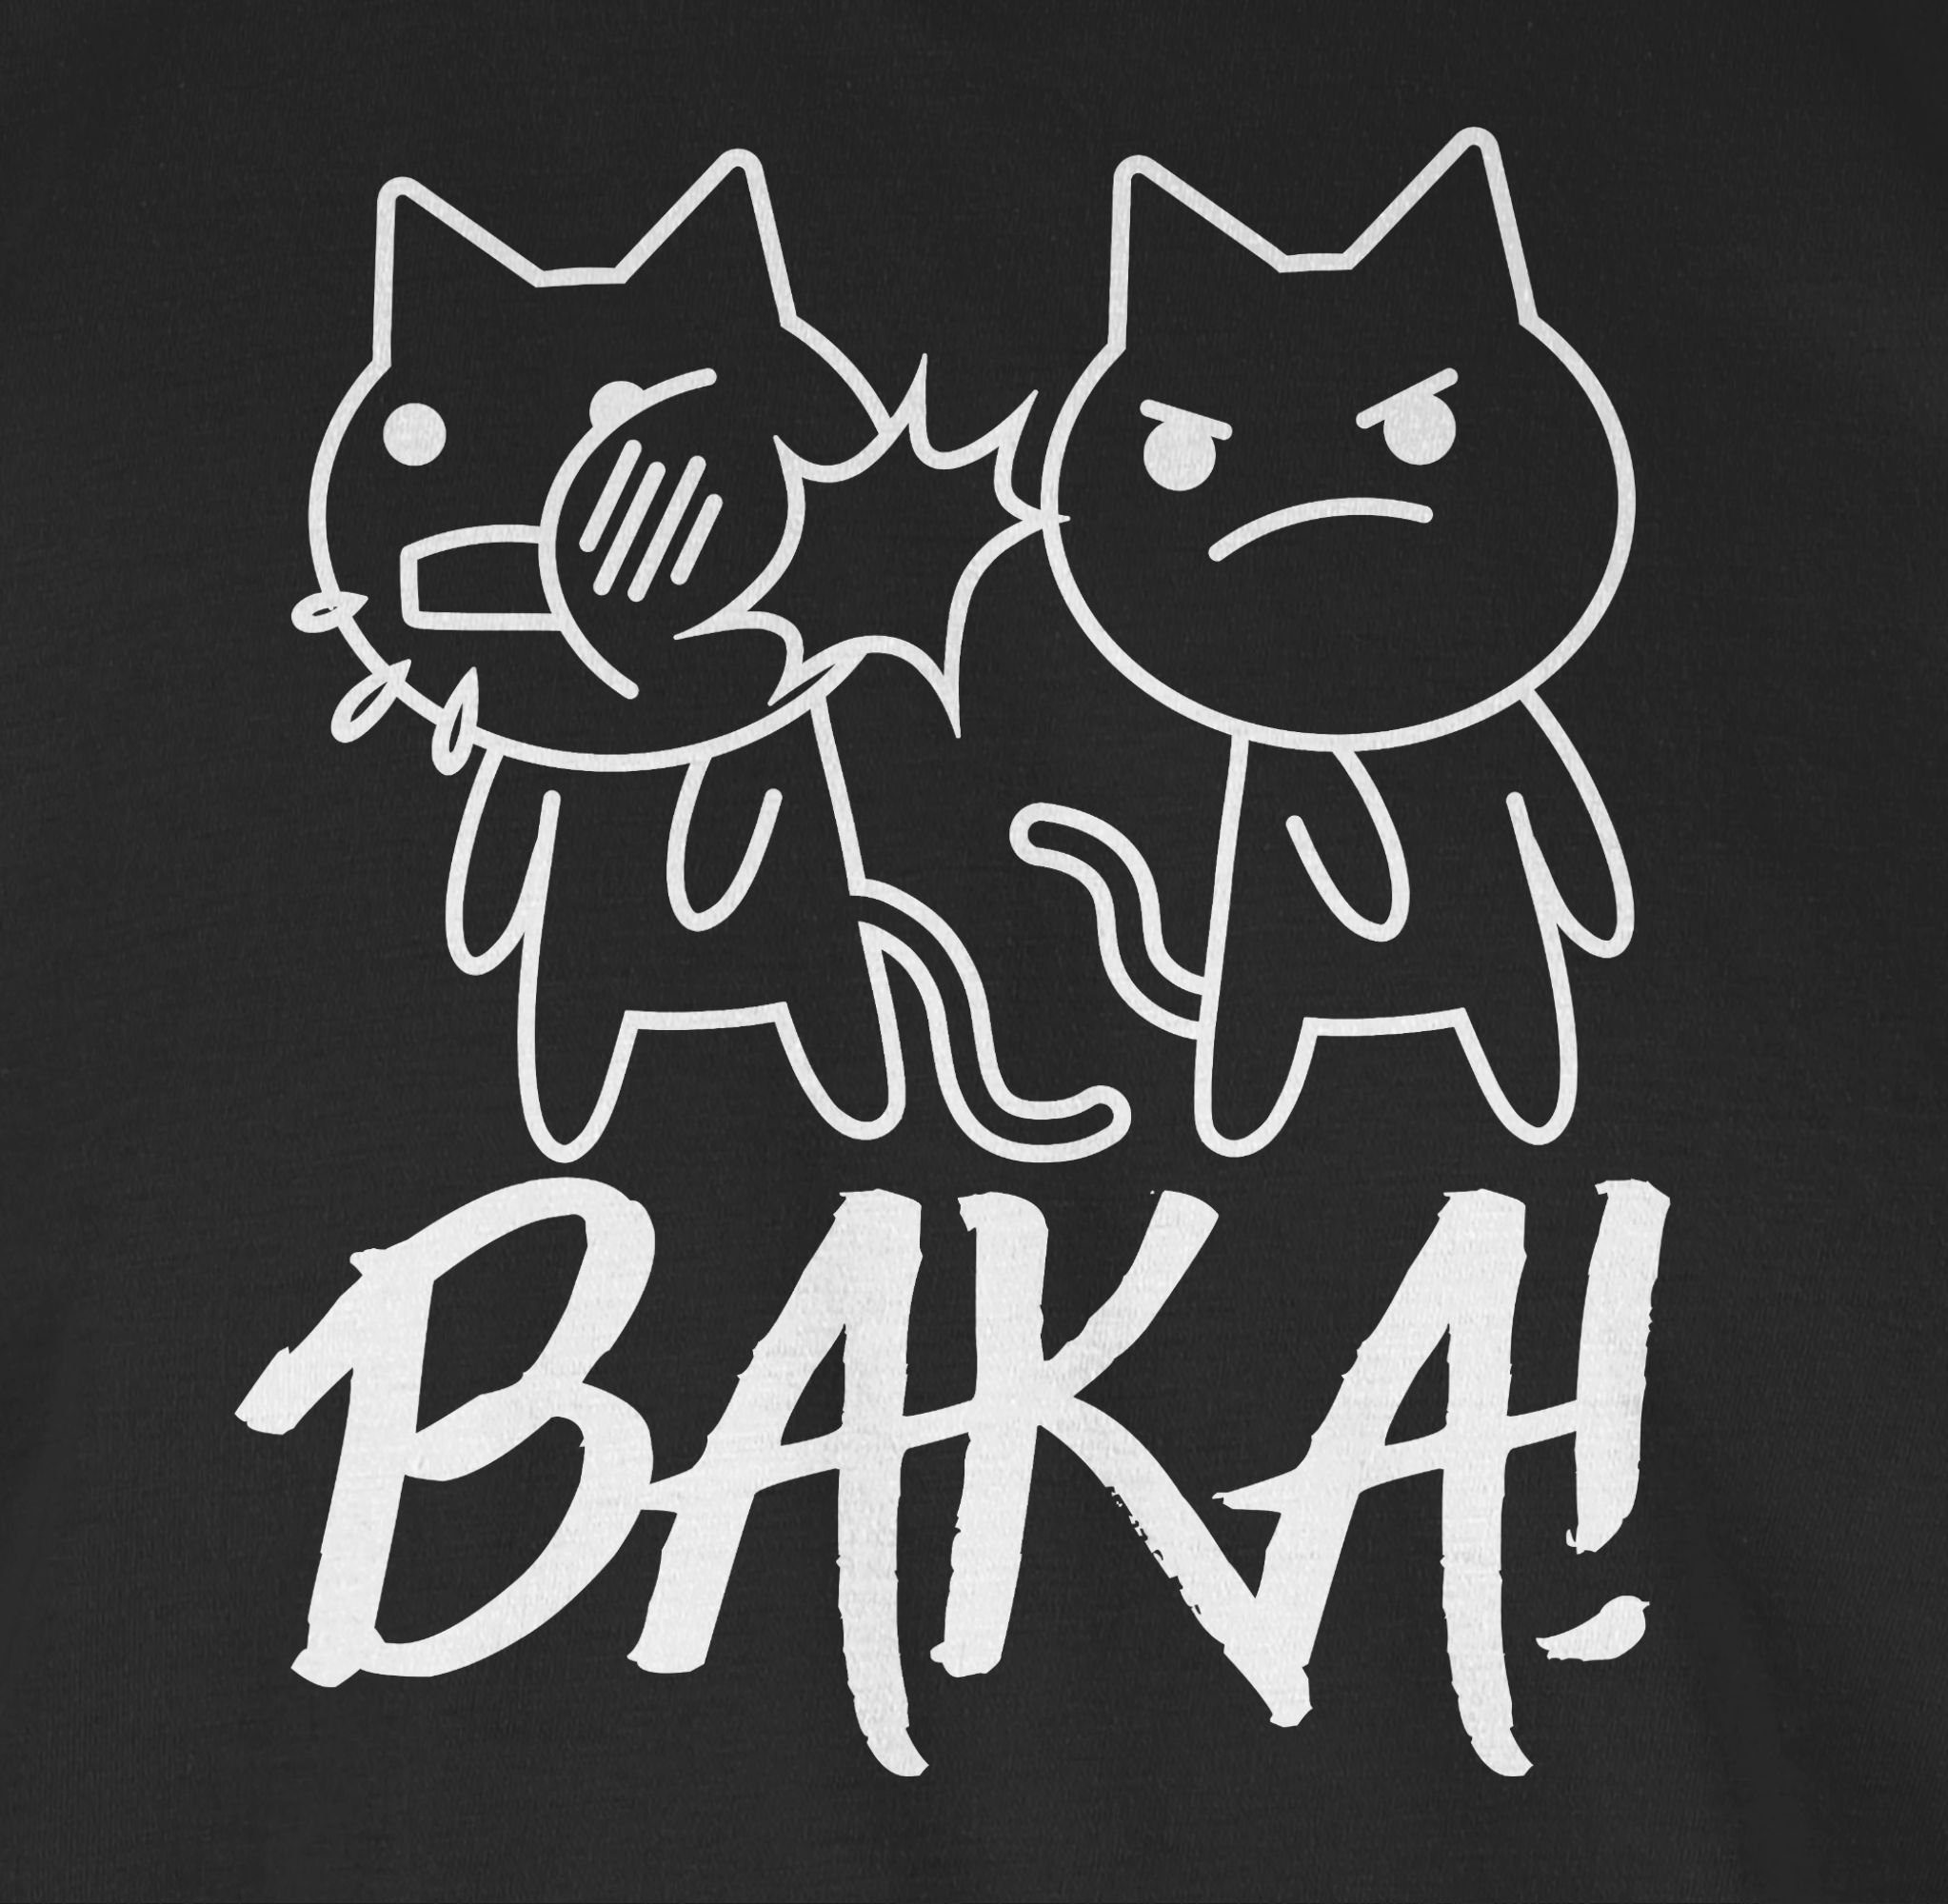 Shirtracer T-Shirt Baka! mit - Katzen Schwarz 01 Geschenke weiß Anime